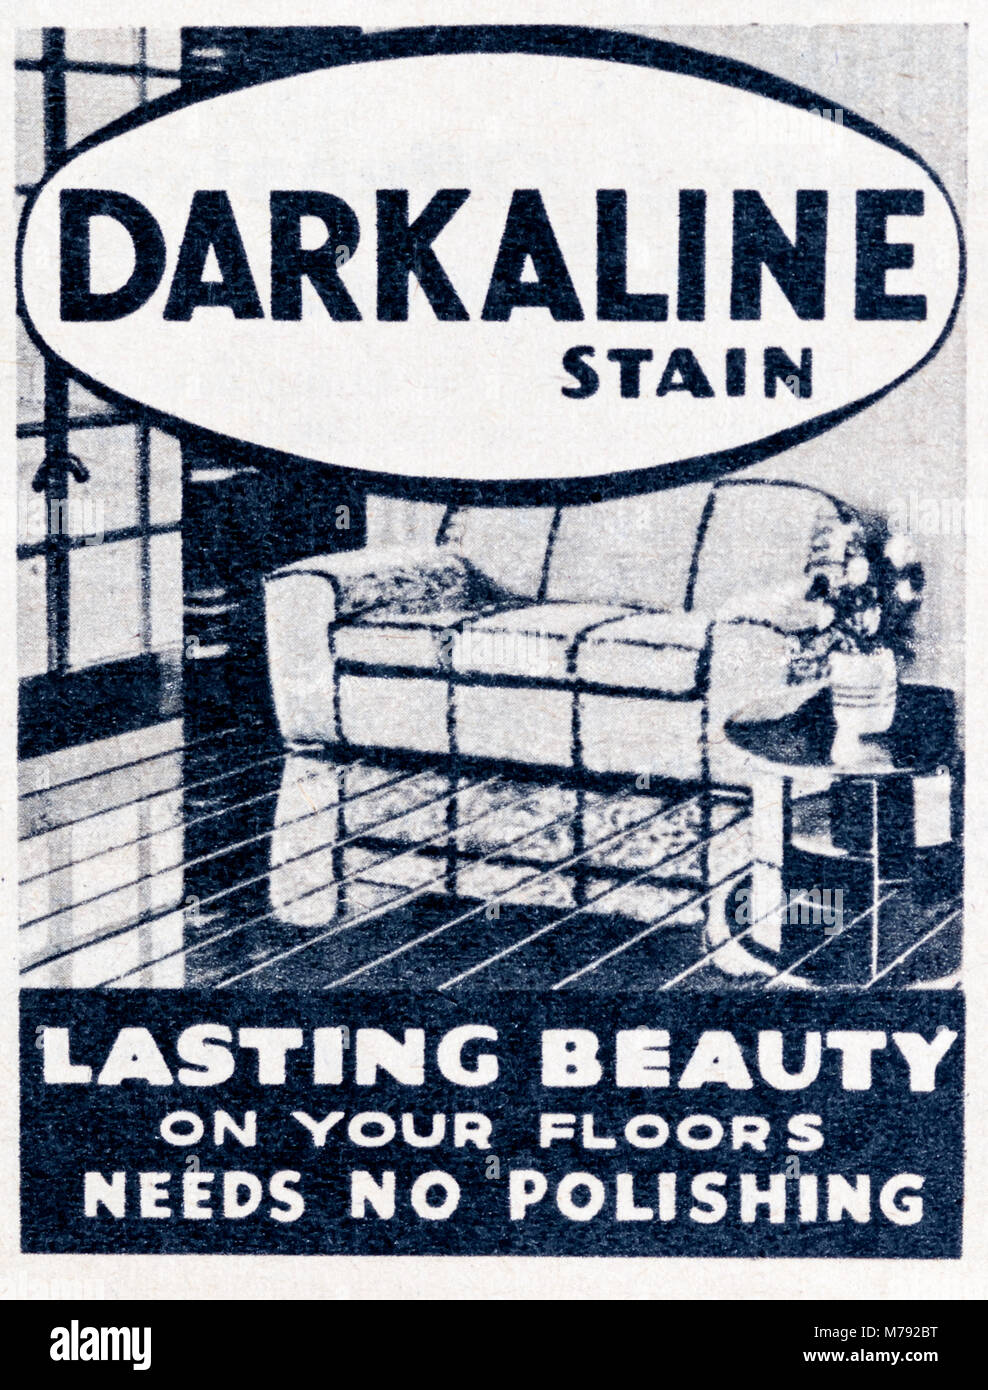 Una revista de 1950 Anuncio publicitario piso Darkaline mancha. Foto de stock